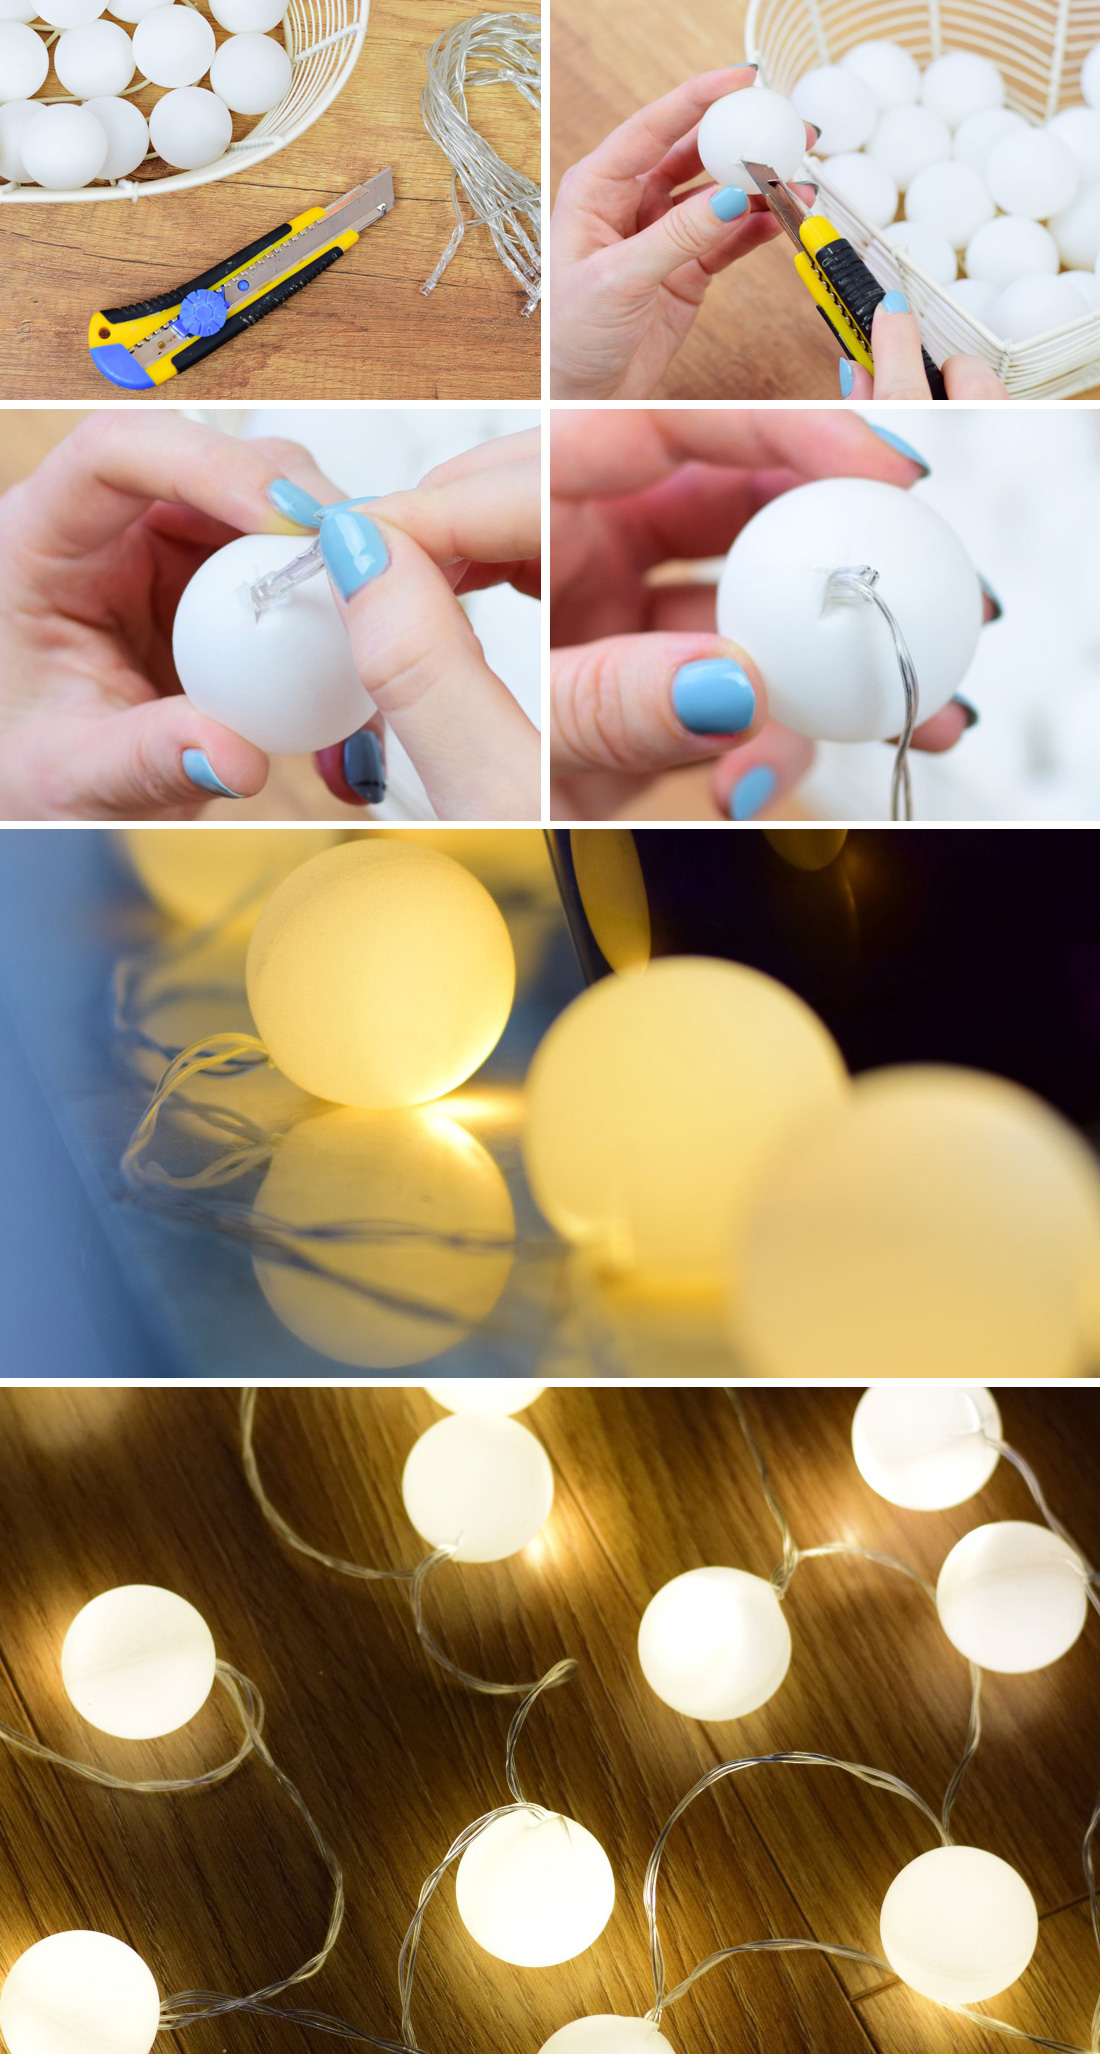 DIY instrucción guirnalda de pelotas de ping-pong cadena de luz blog